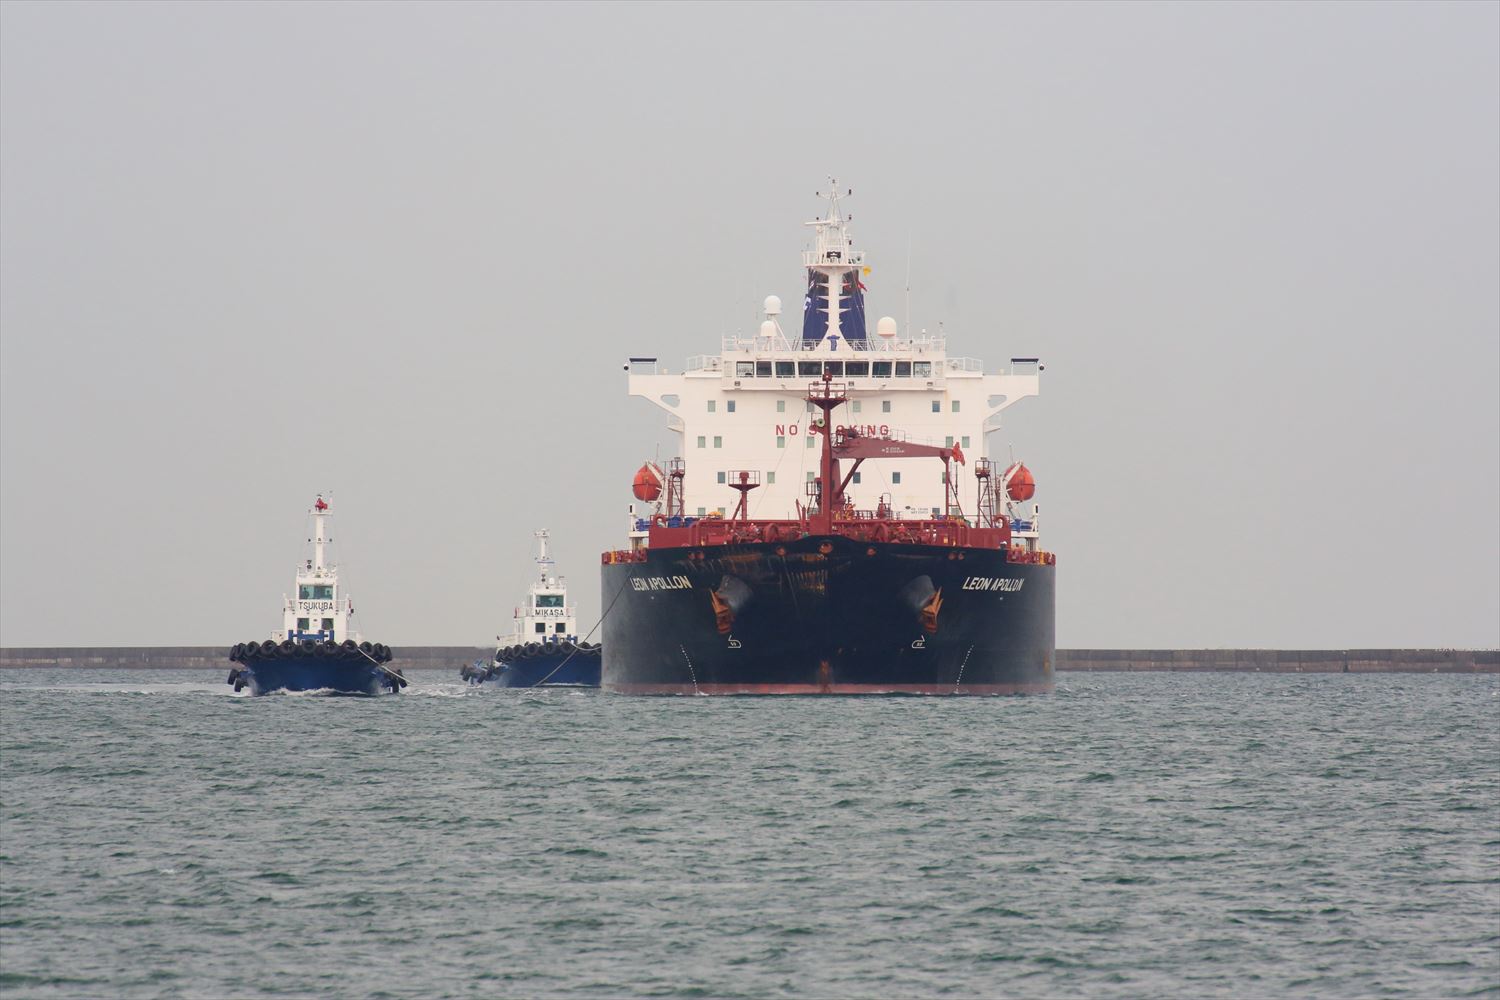 鹿島港の風景 ギリシャの原油／プロダクトタンカー ｢LEON APOLLON 